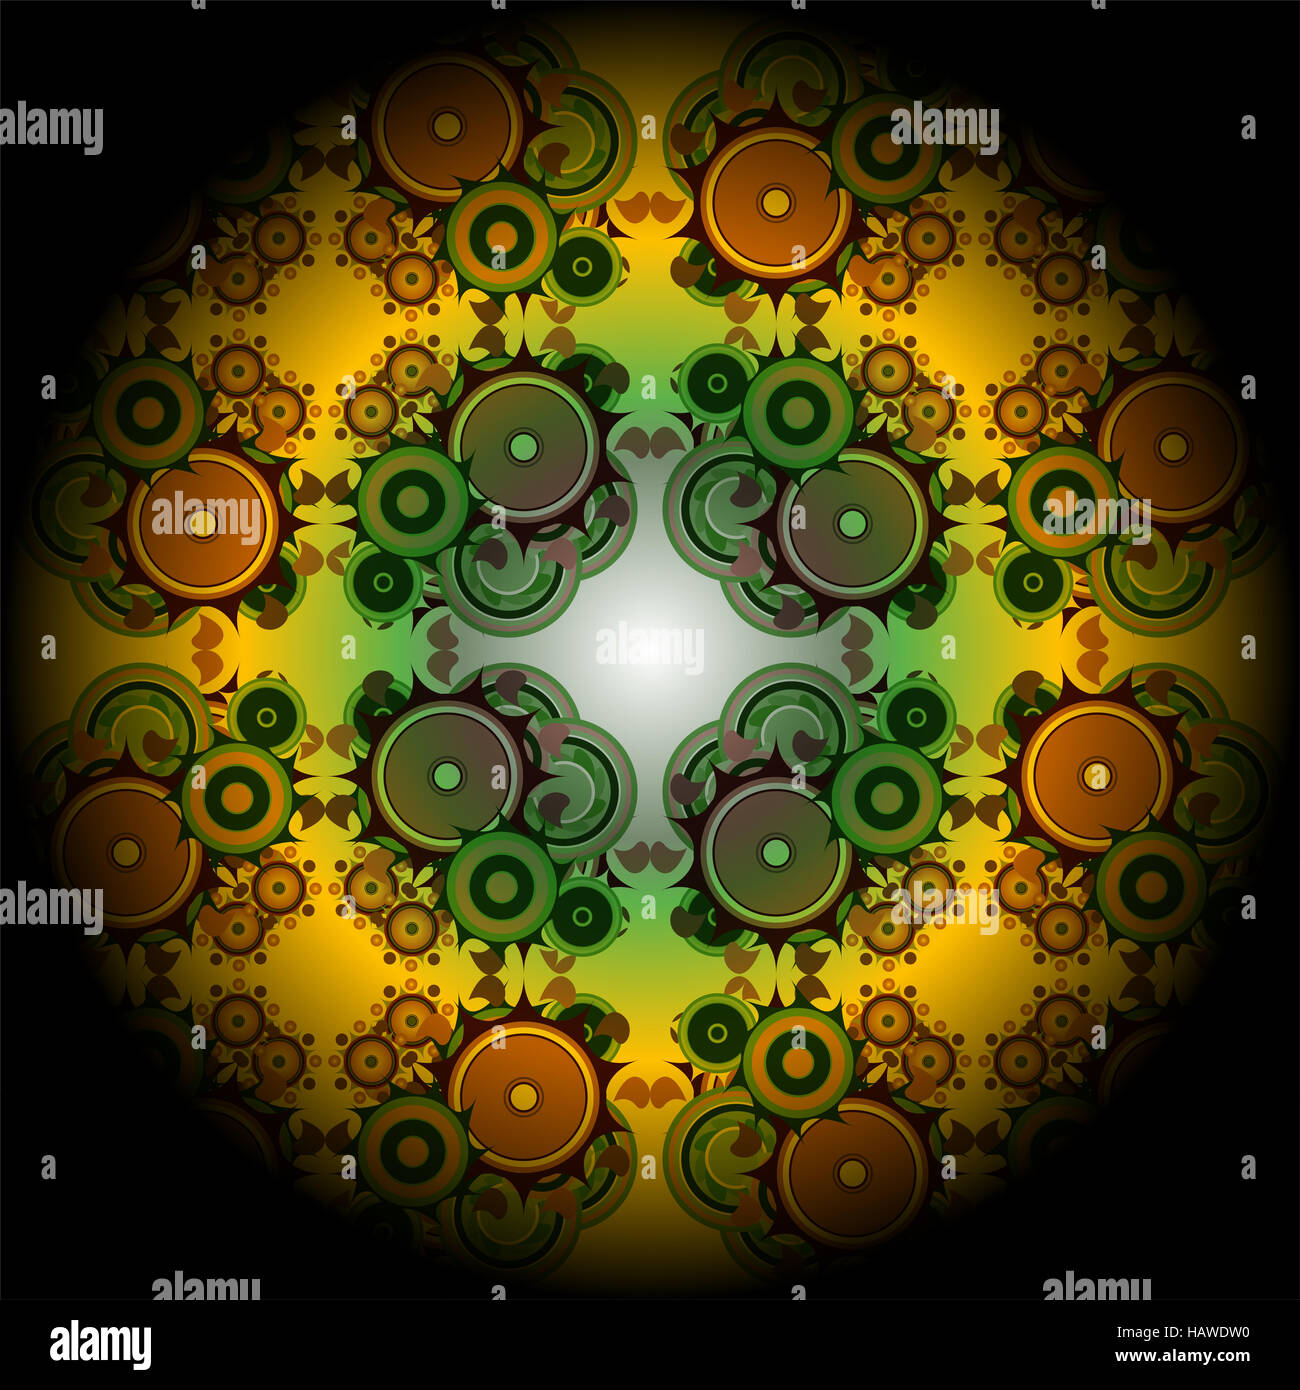 Mandala éclatantes, roue, résumé de l'oeuvre fractale numérique illustration Banque D'Images